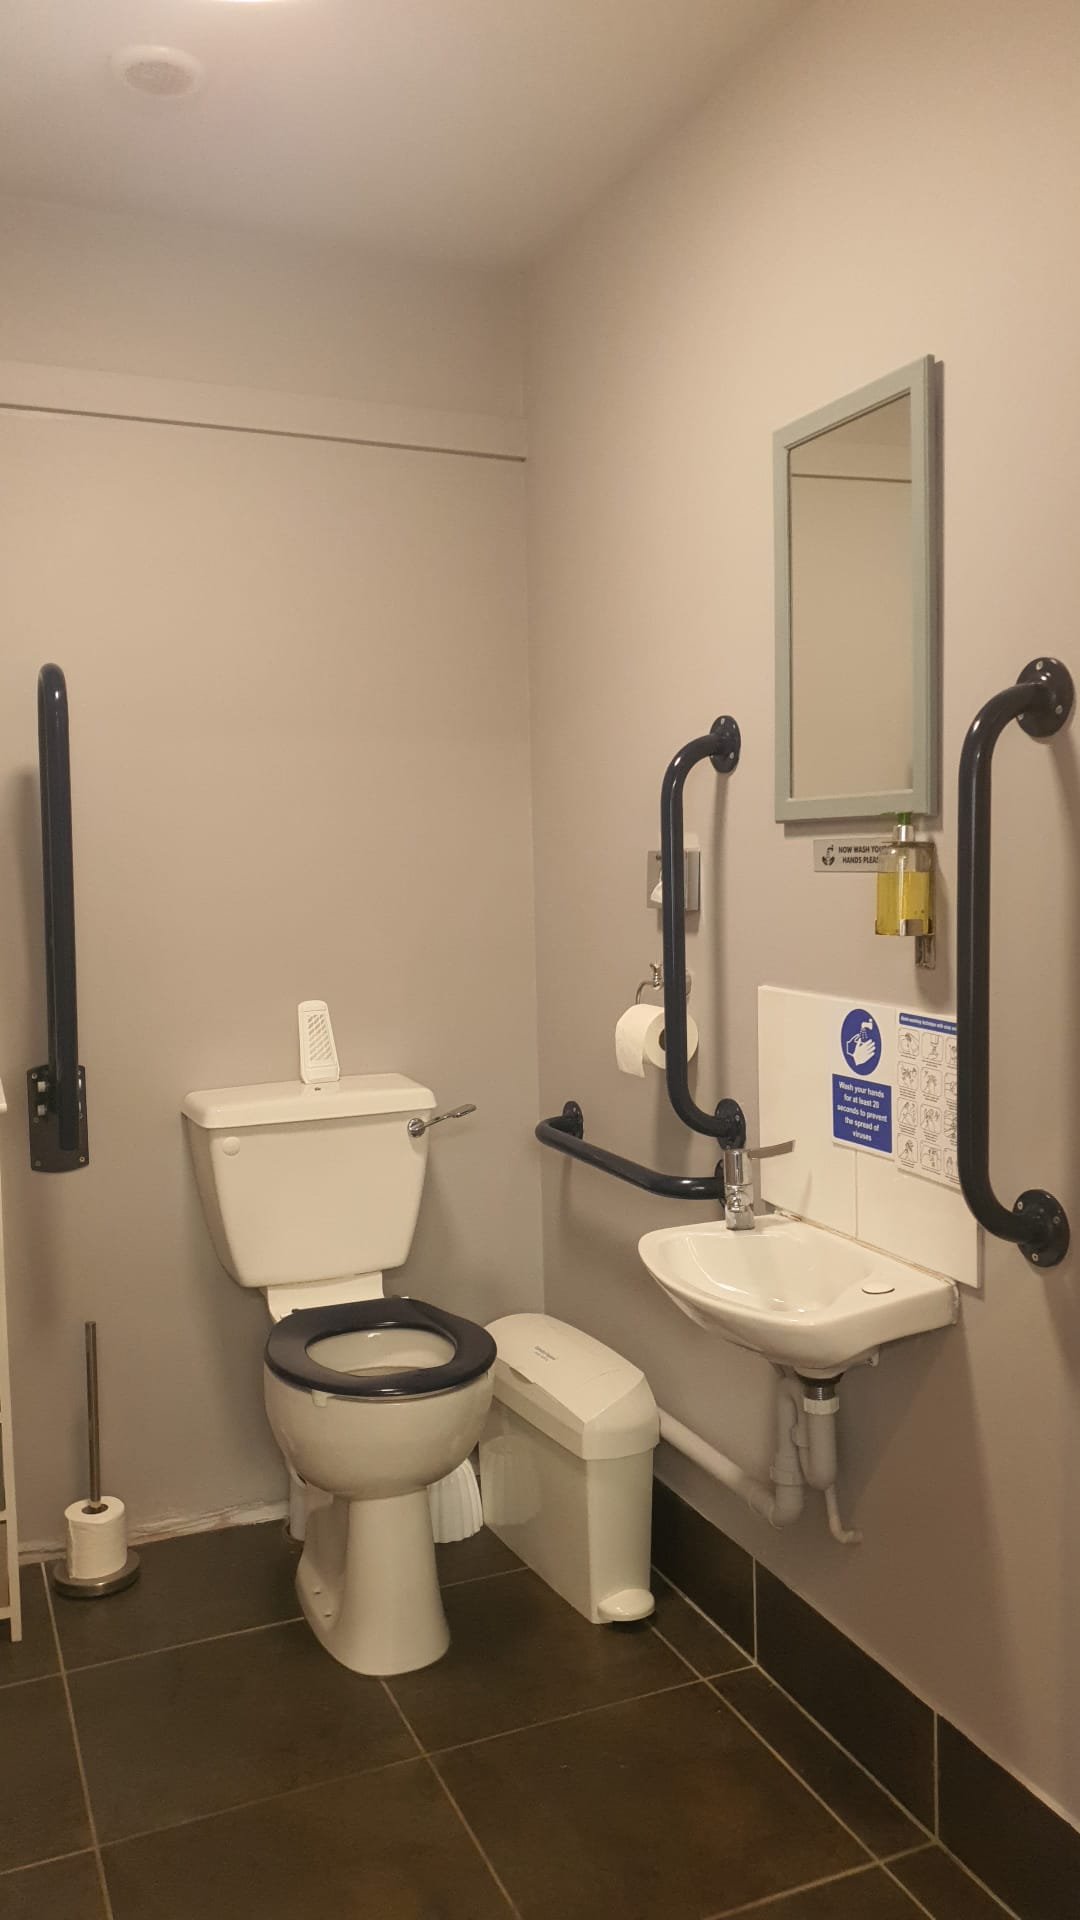 Reception / Treatment Rooms Doc M Bathroom (Copy)